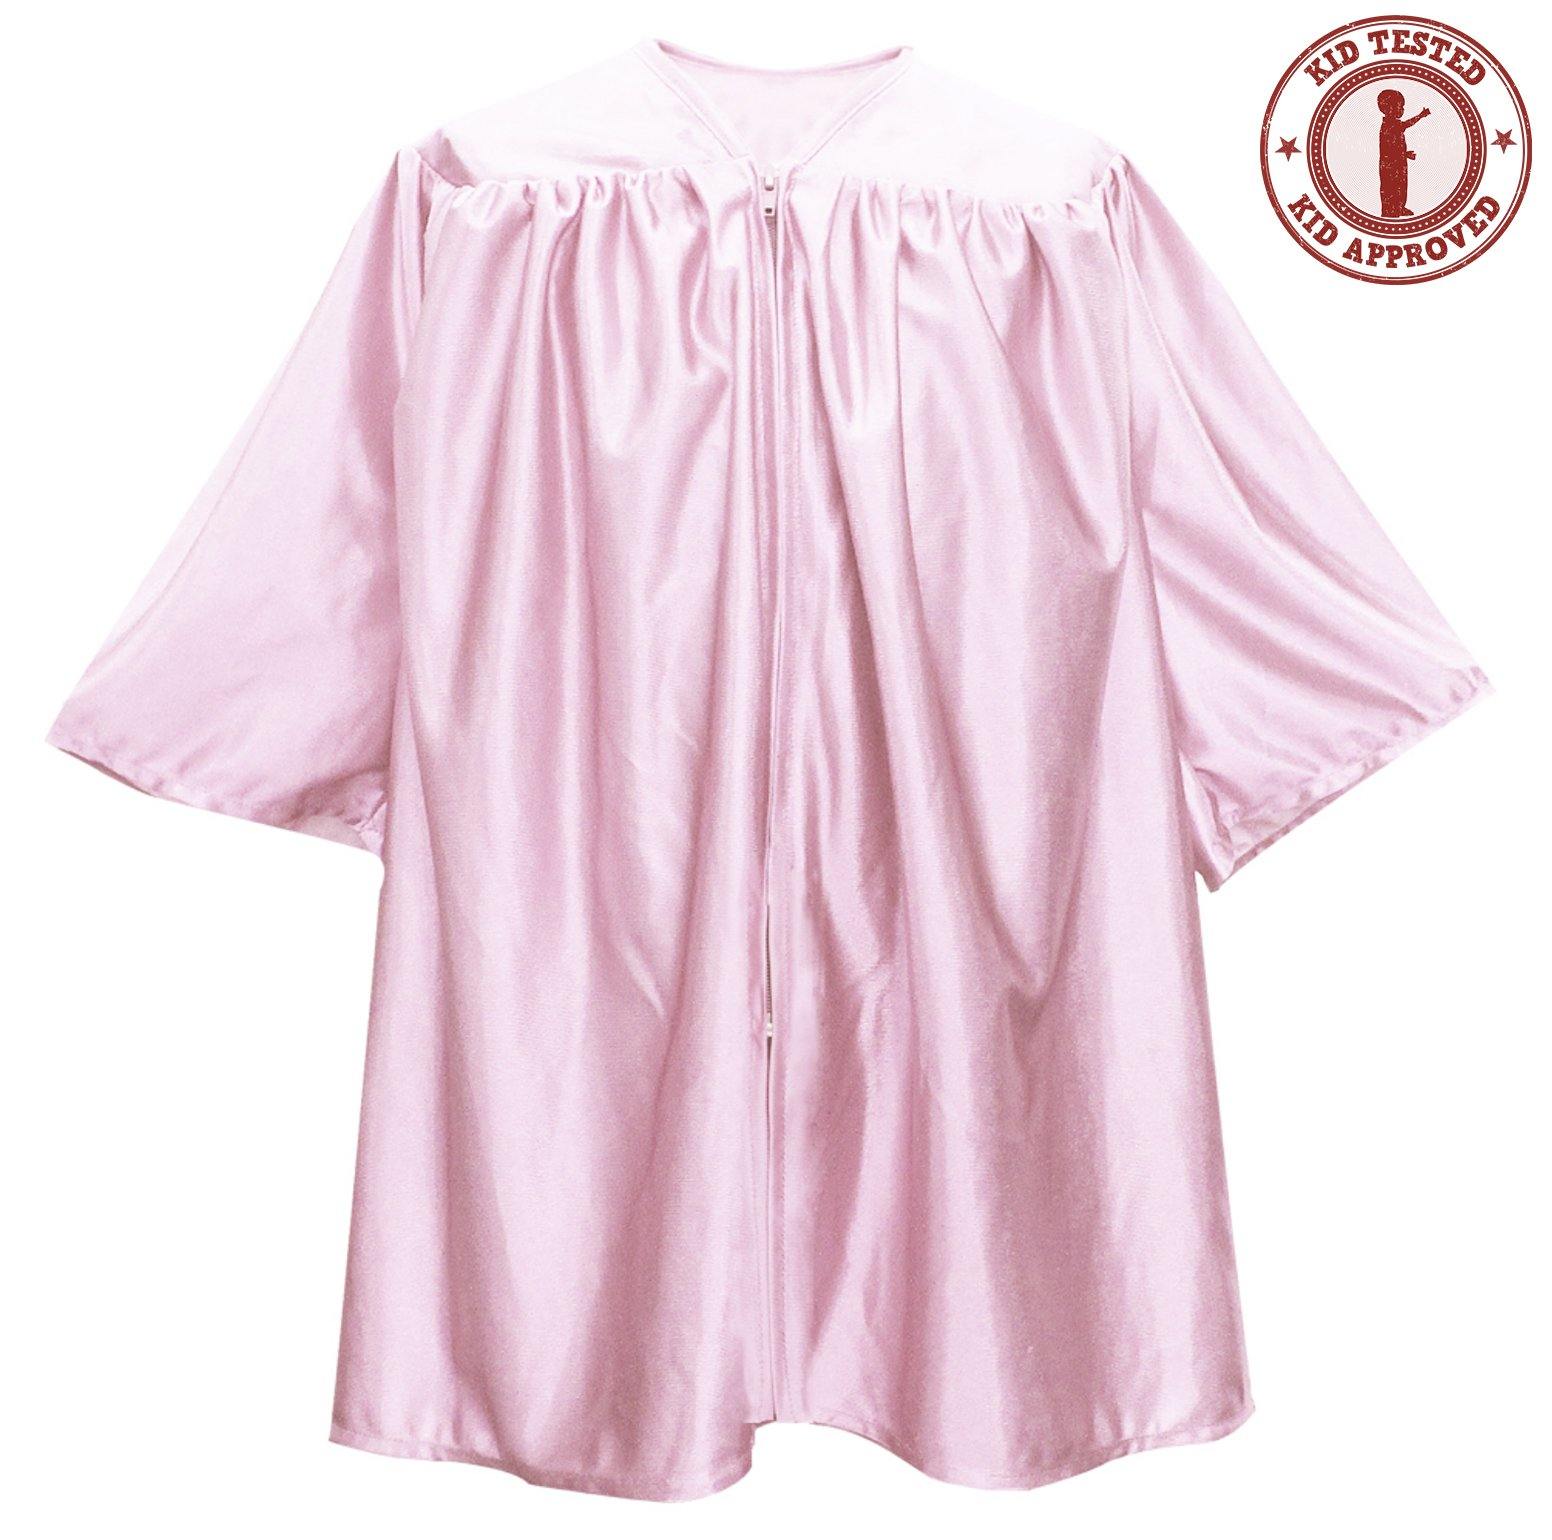 Child Pink Graduation Gown - Preschool & Kindergarten Gowns - Graduation Attire